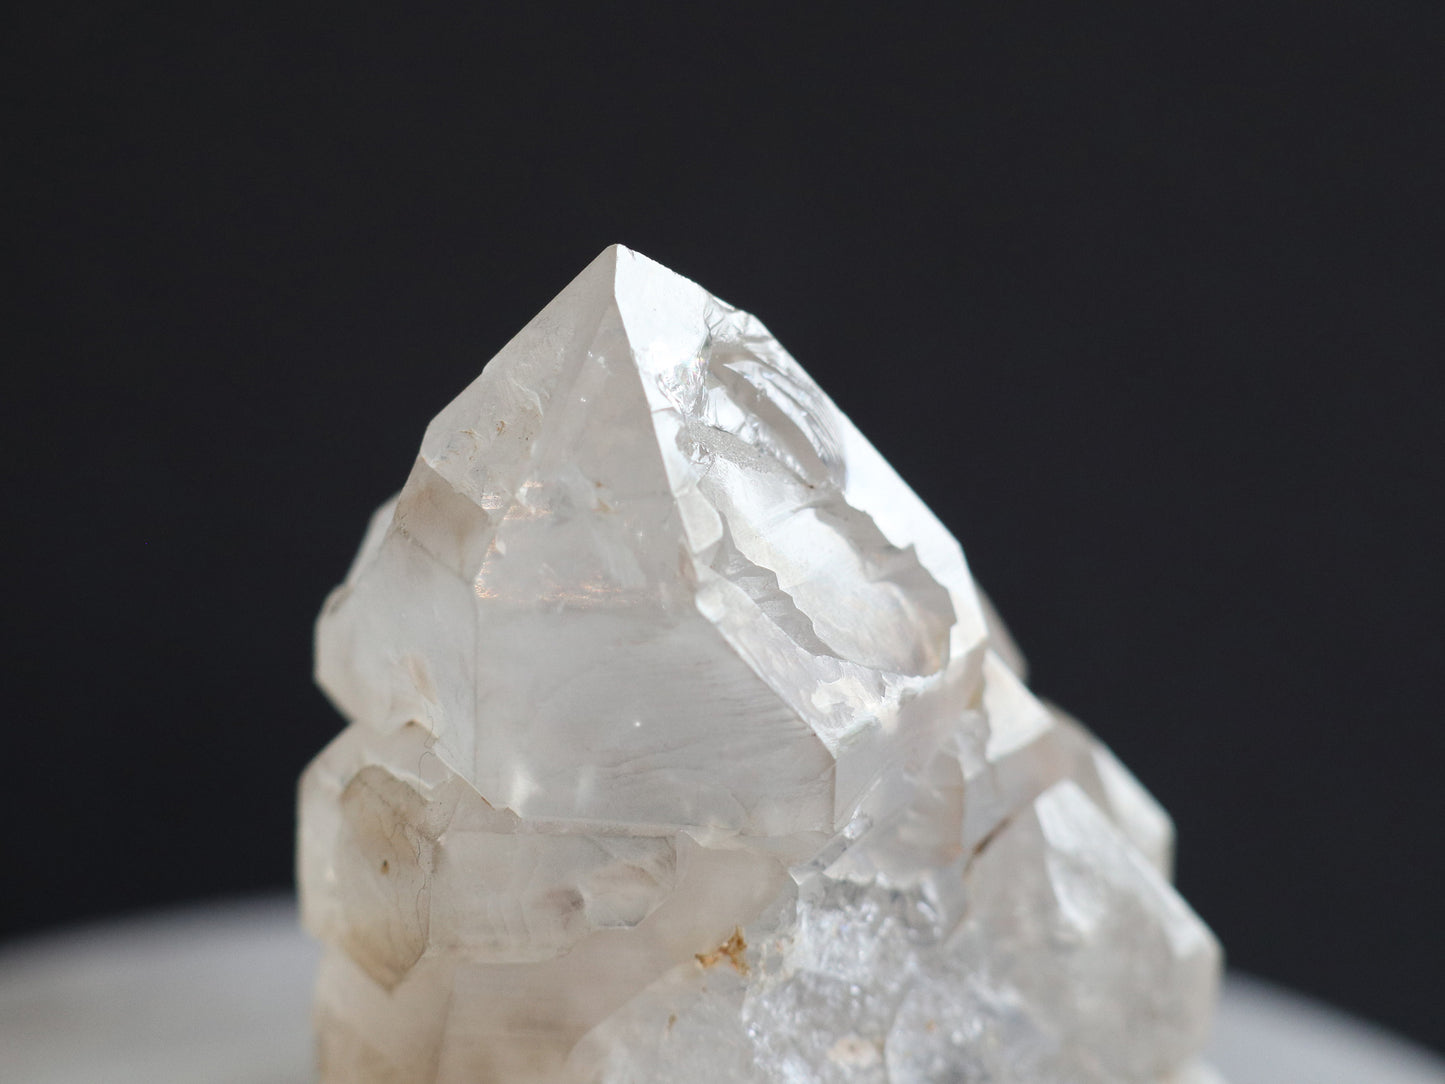 エレスチャル、セプター、レインボー、ガネーシュヒマール産ヒマラヤ水晶原石PN:GG-132